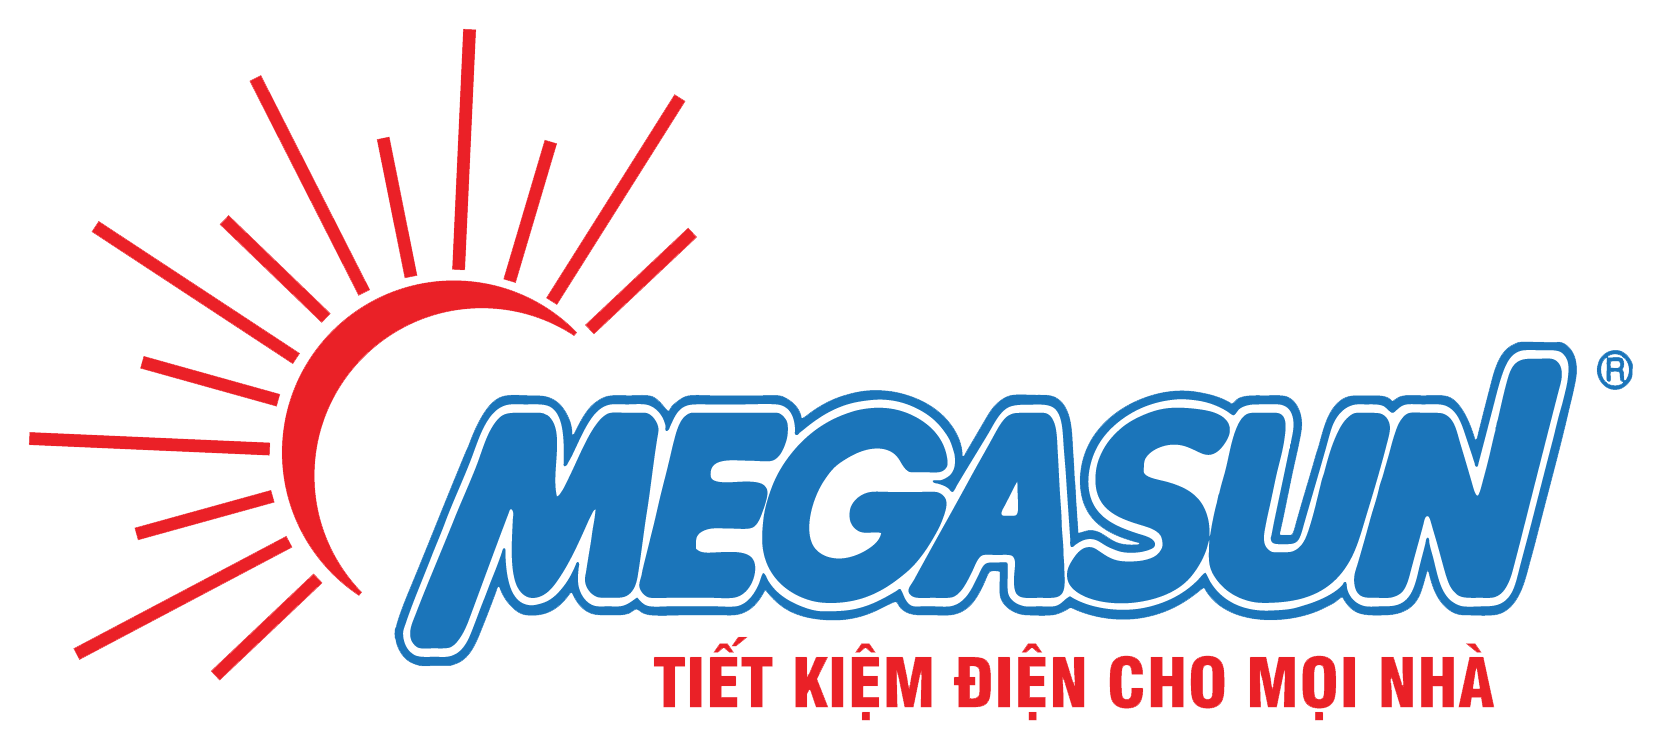 Megasun